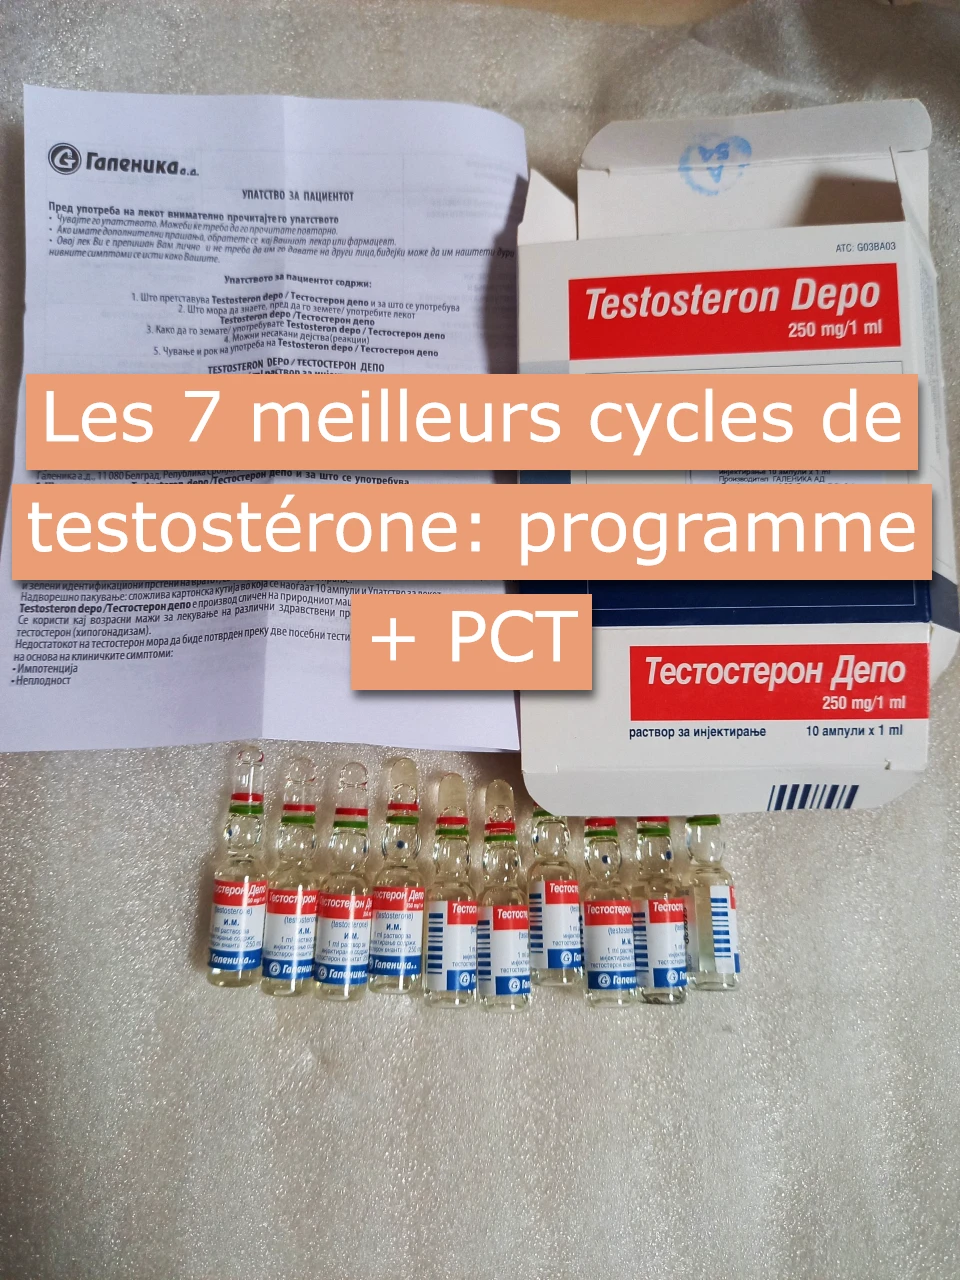 Les 7 meilleurs cycles de testostérone: programme + PCT